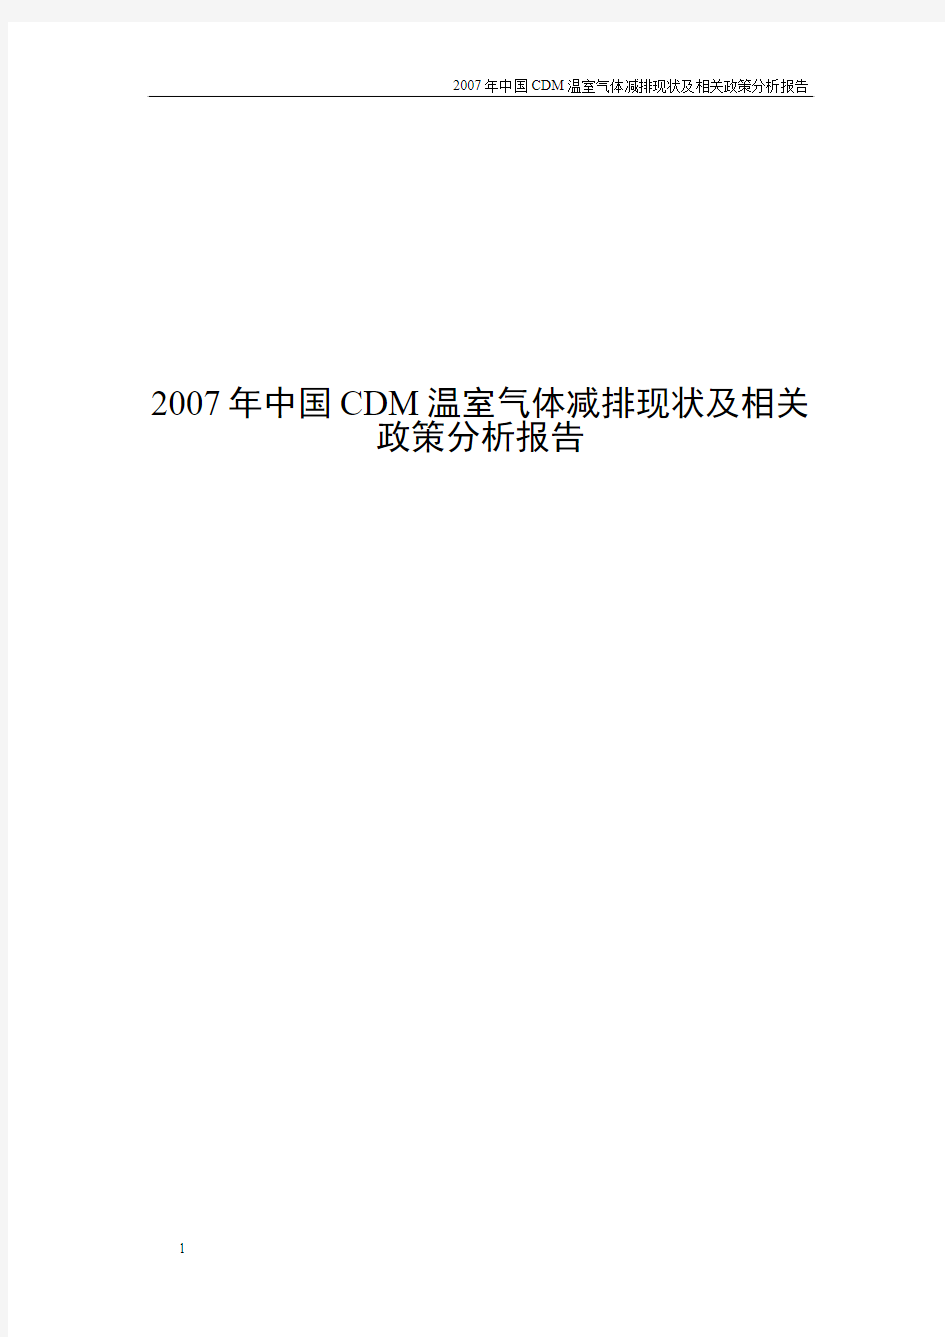 2007年中国CDM温室气体减排现状及相关政策分析报告